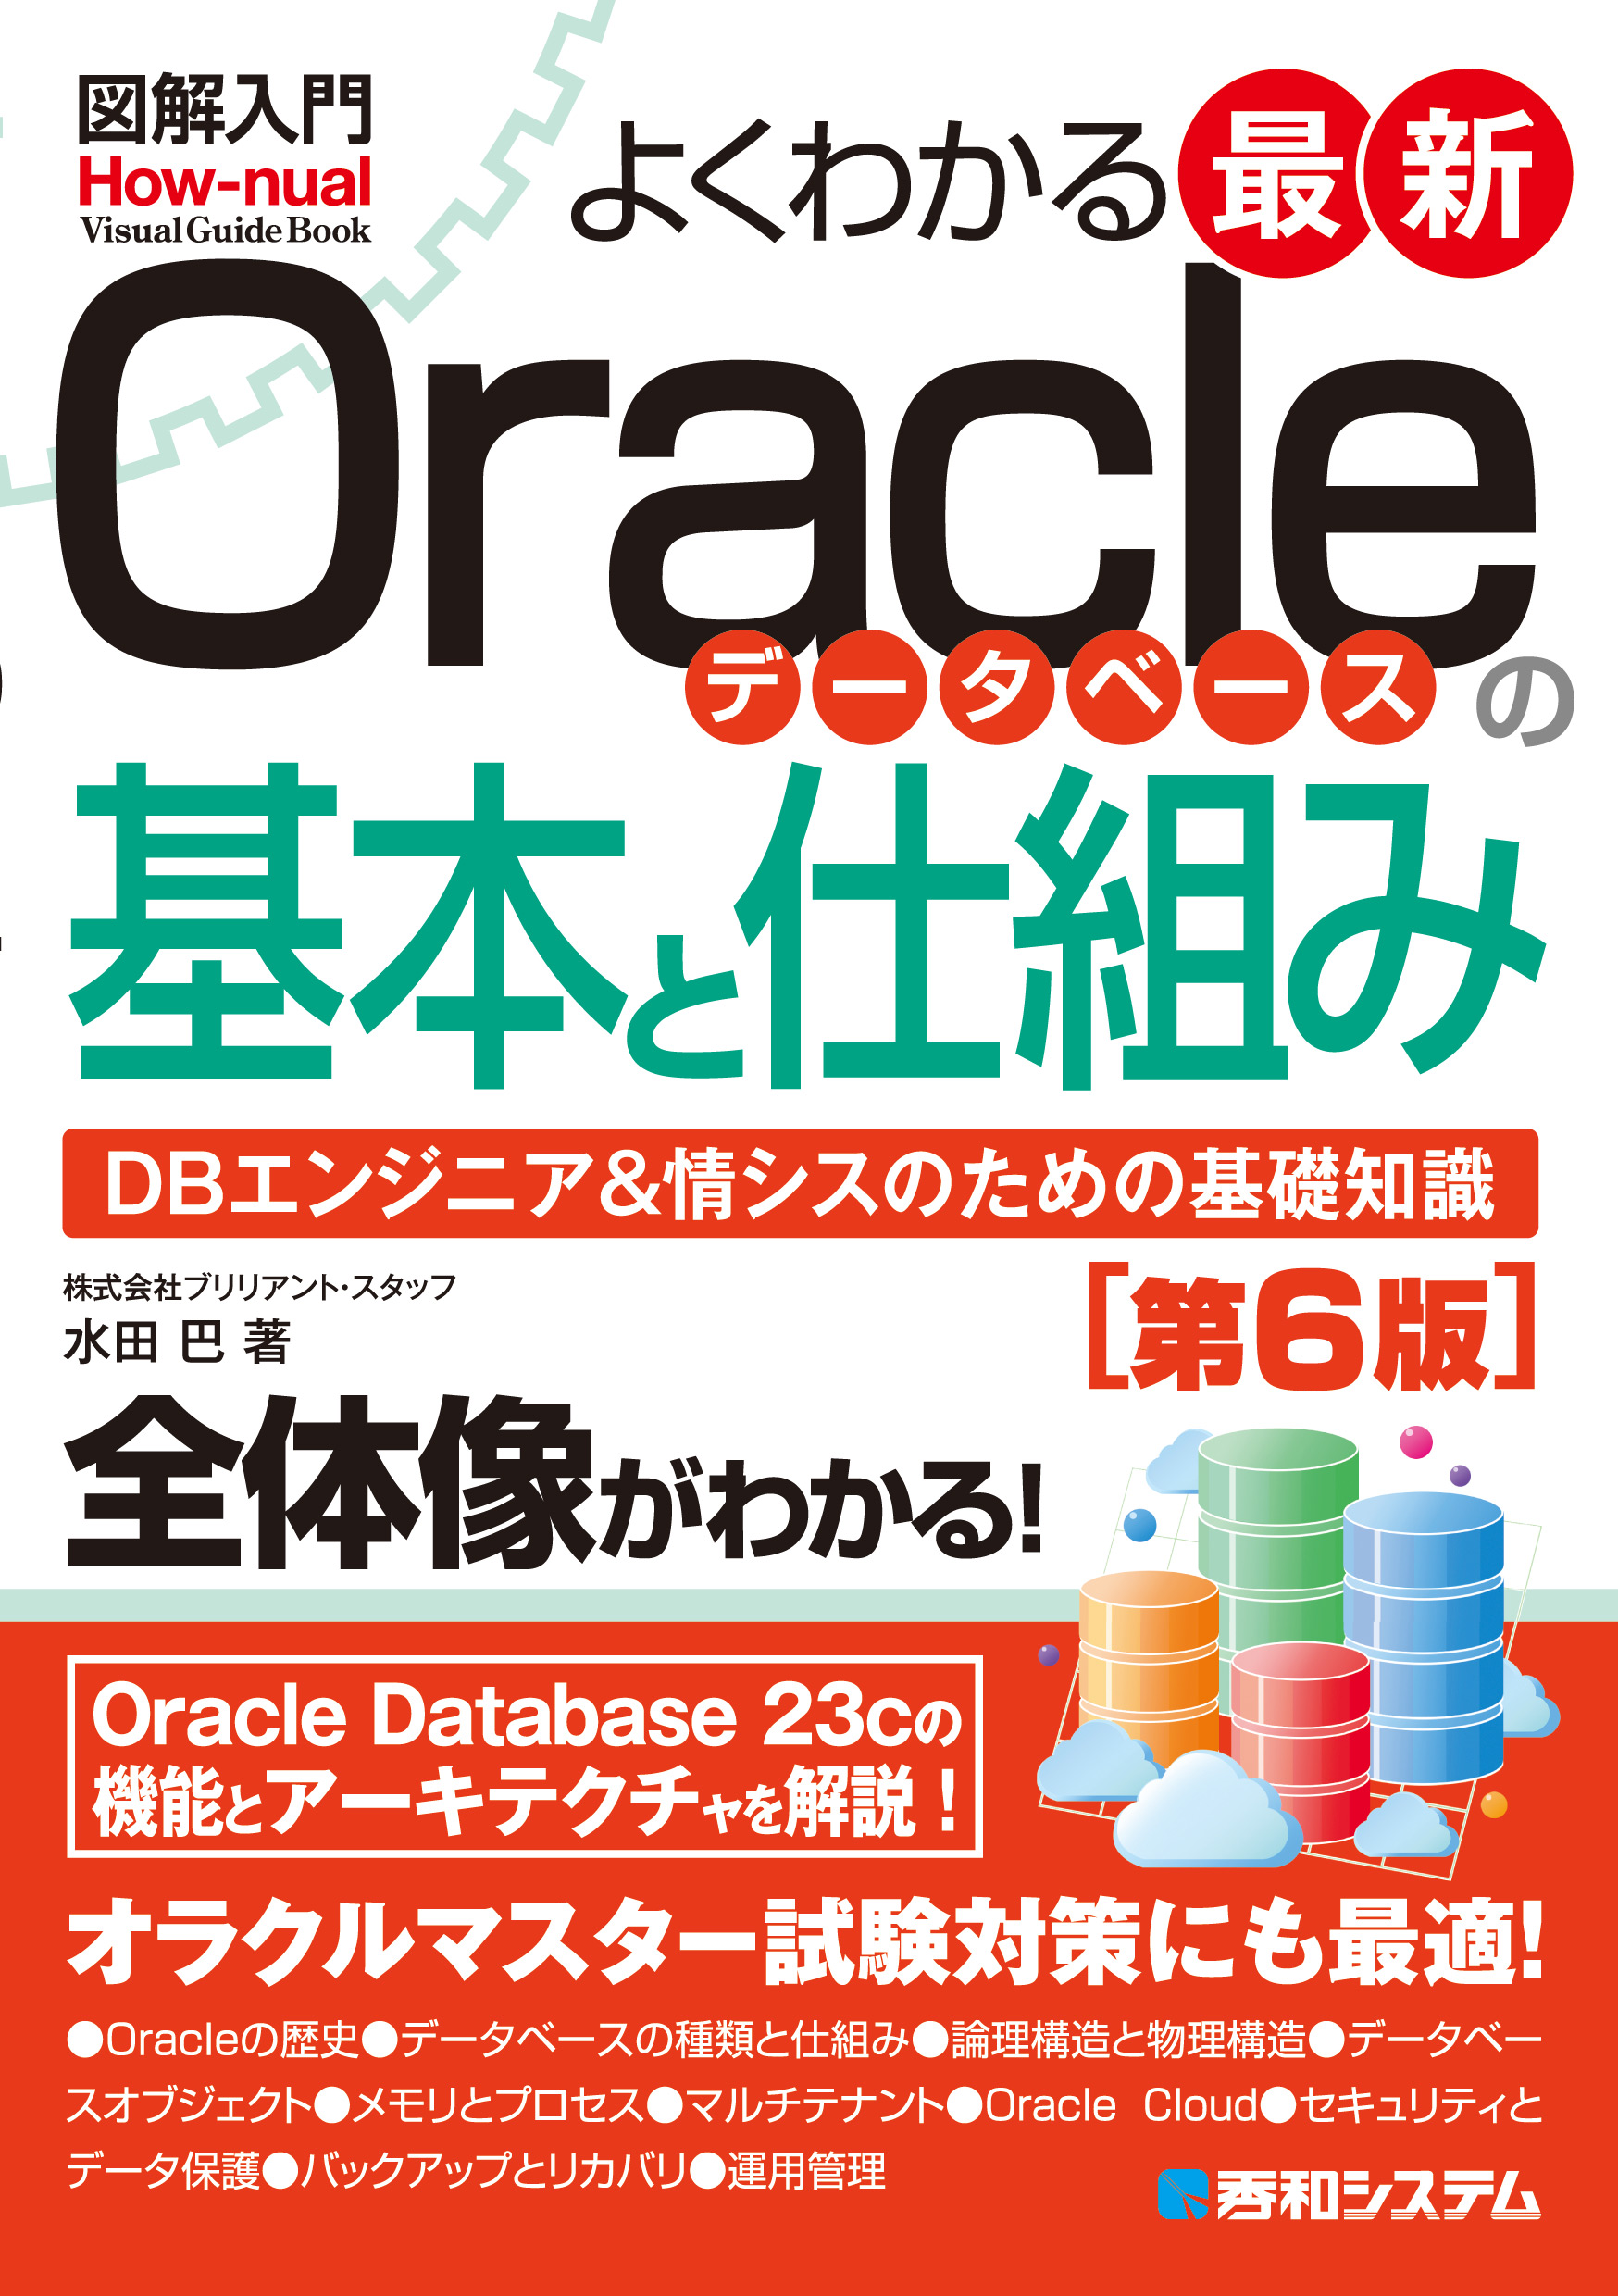 図解入門よくわかる 最新Oracleデータベースの基本と仕組み［第6版］の商品画像